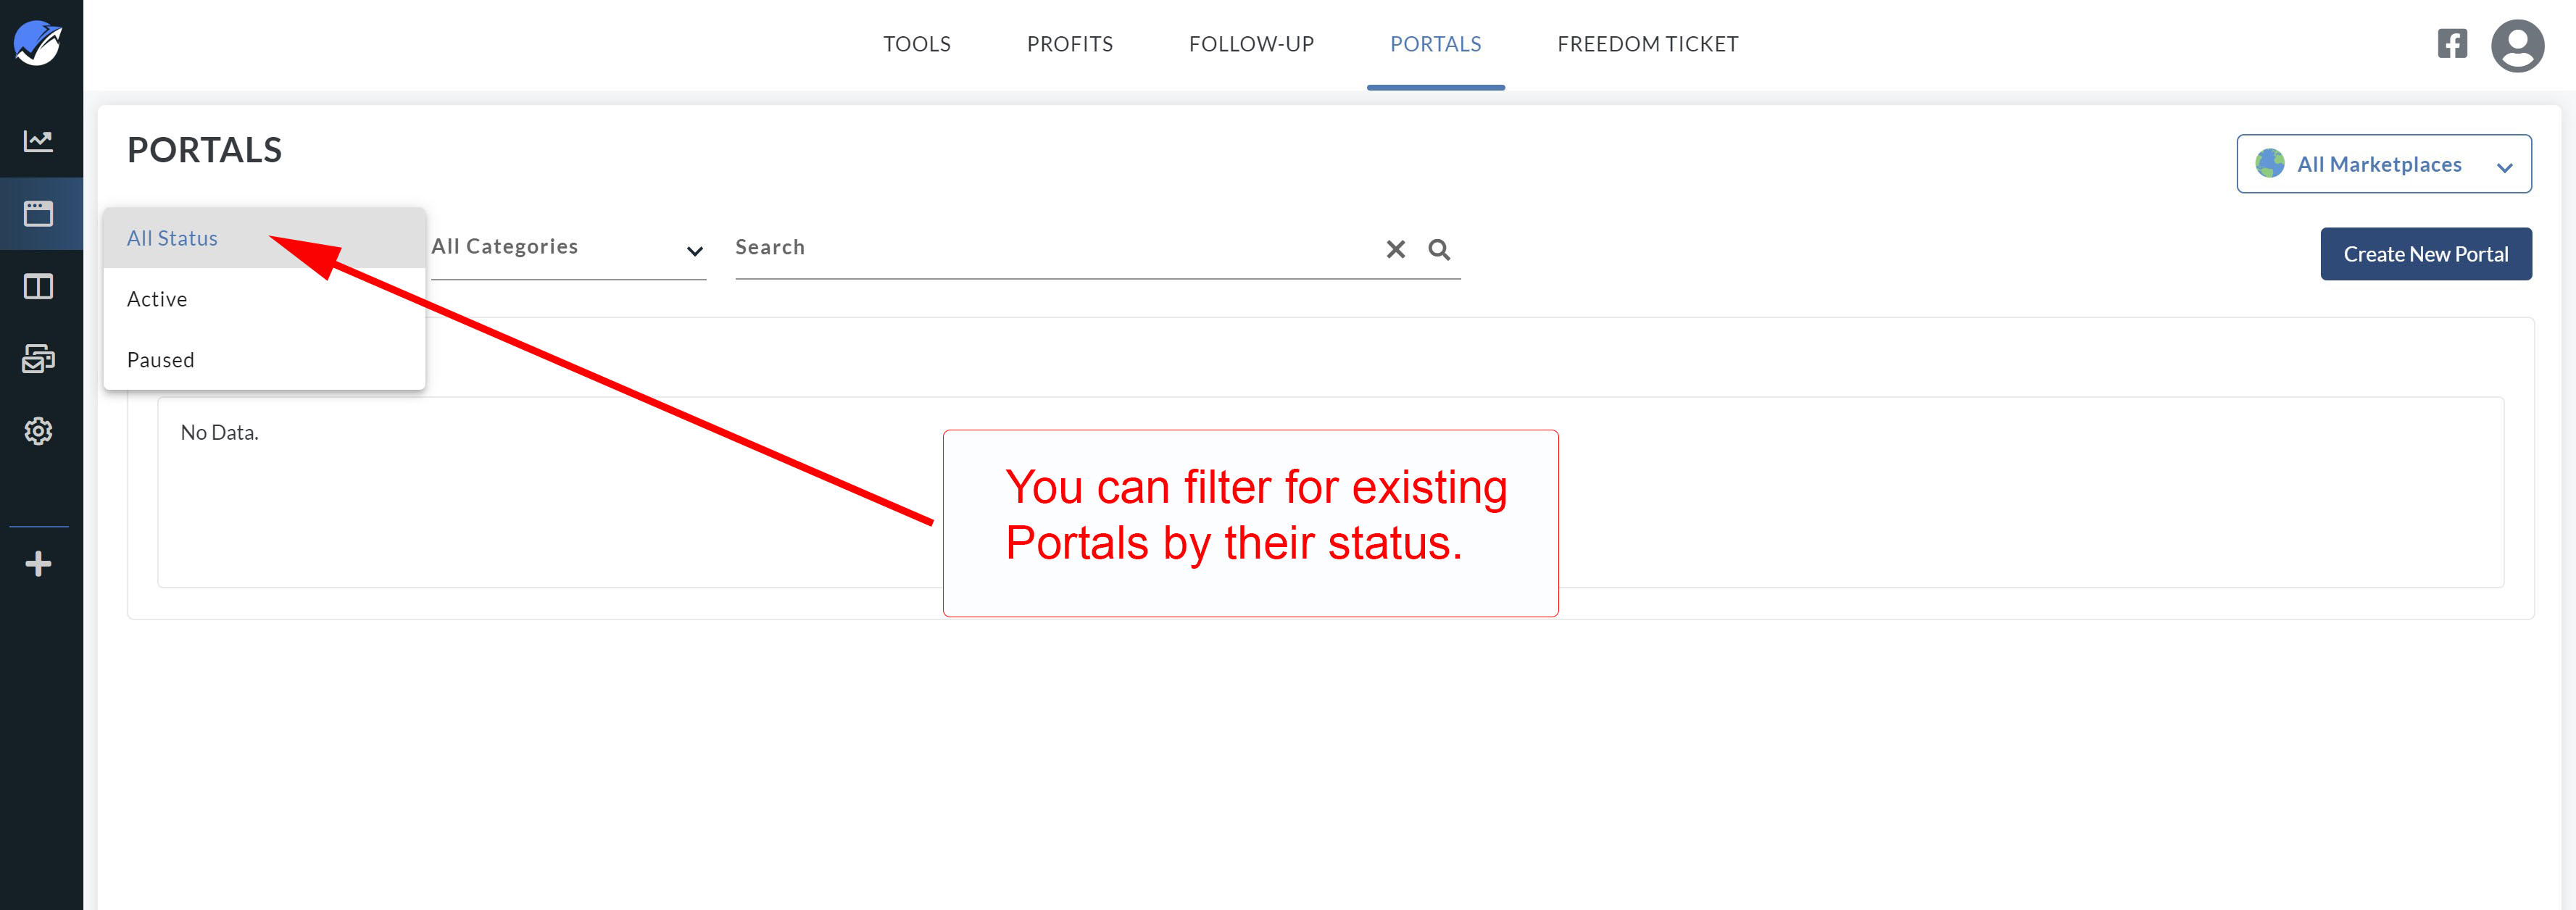 new_portals_filters1.jpg